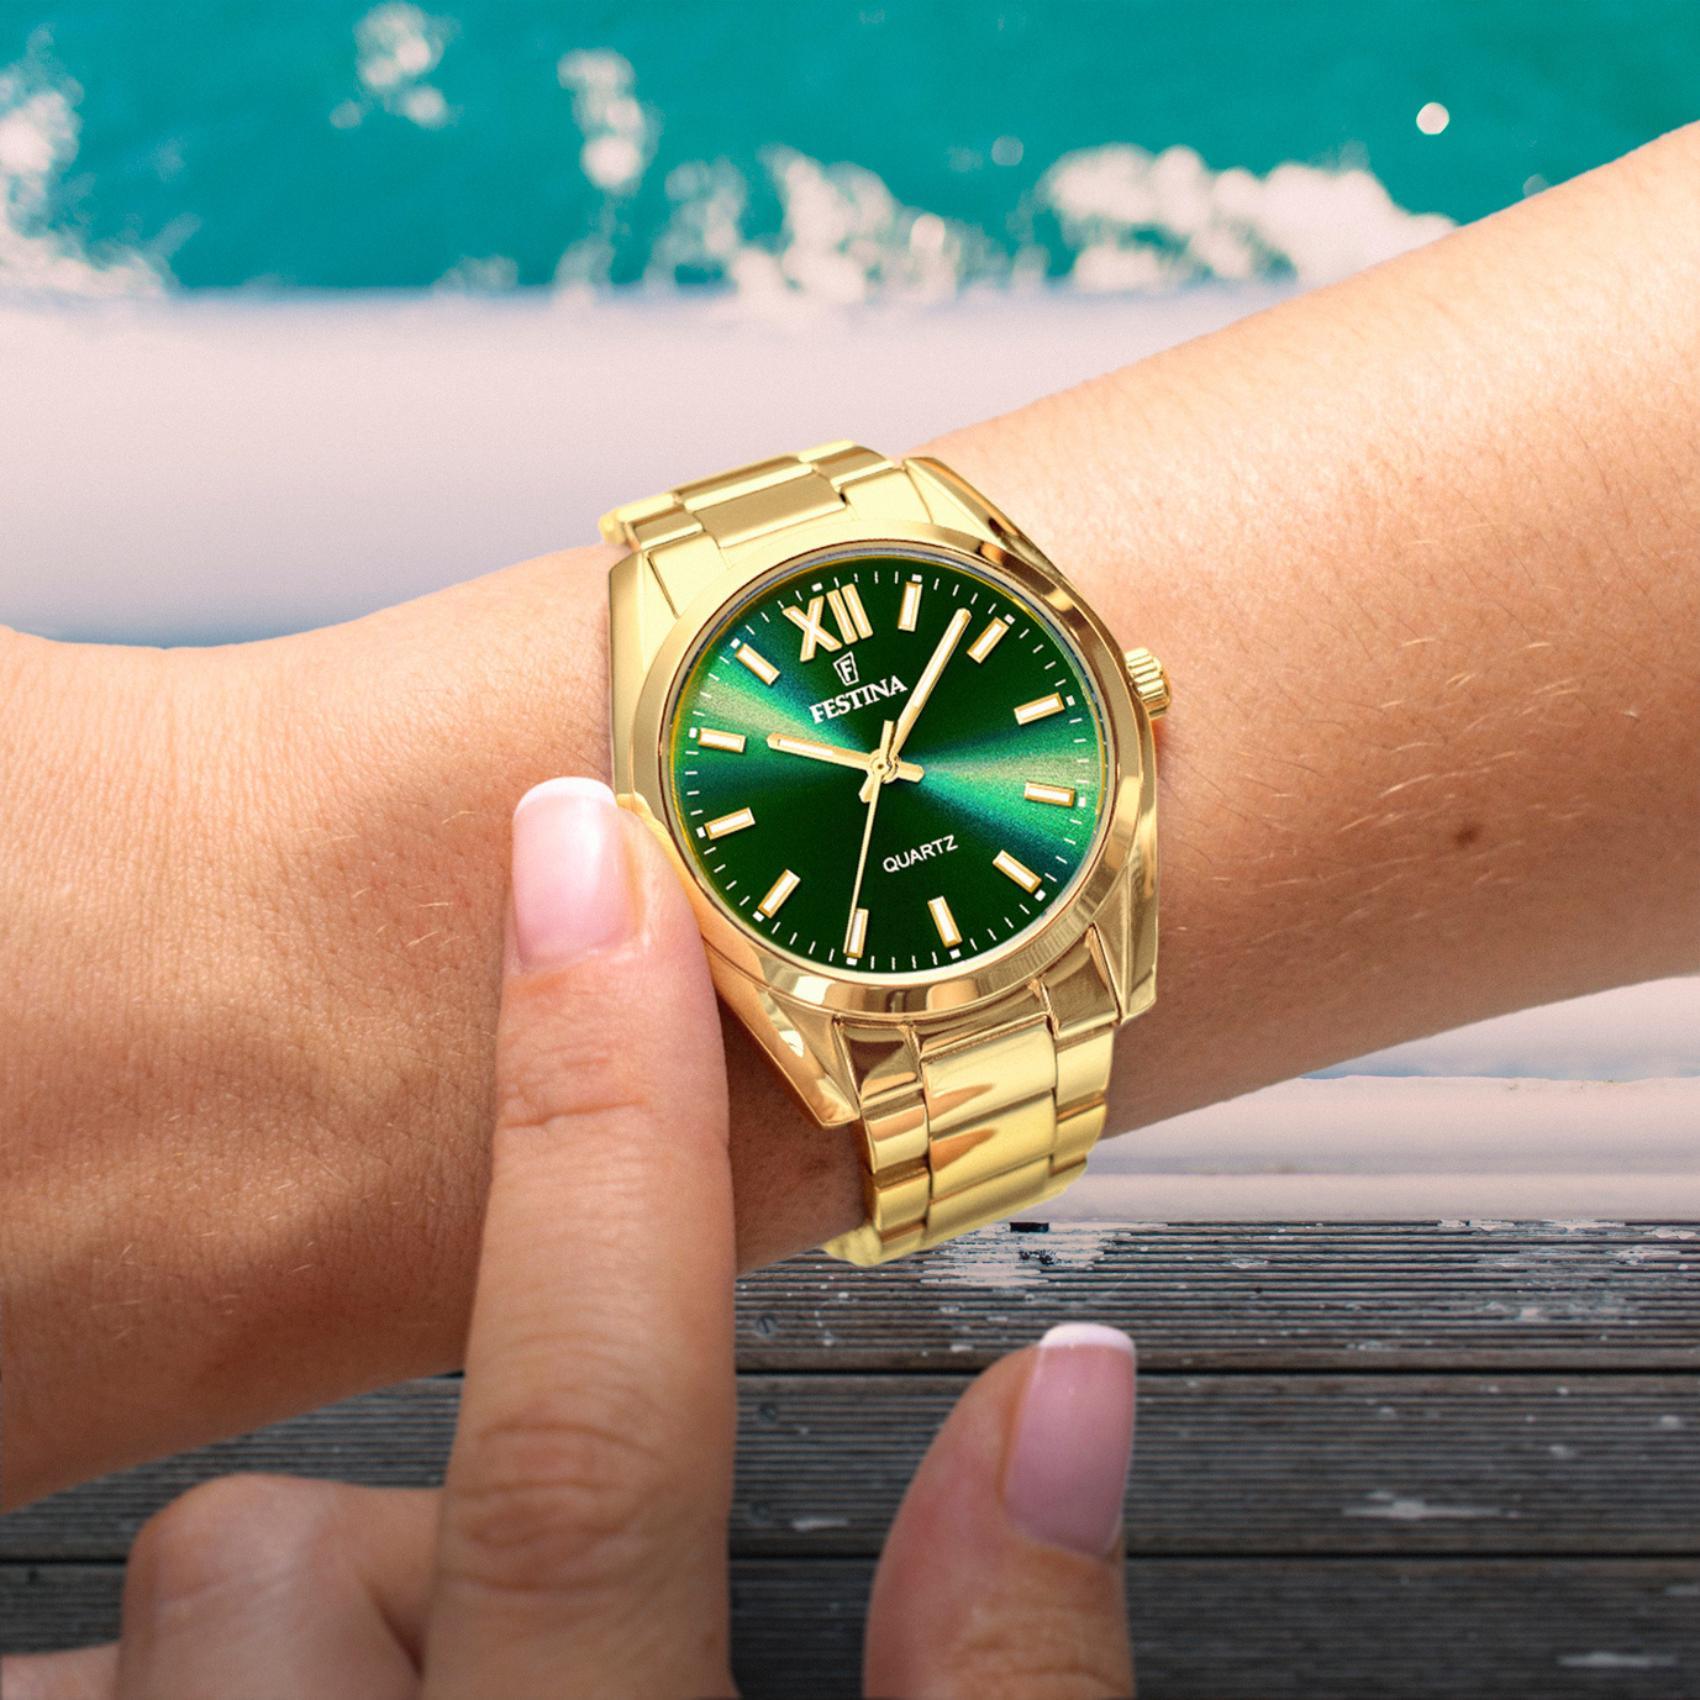 Γυναικείο ρολόι Festina Alegria F20640/9 με χρυσό ατσάλινο μπρασελέ, πράσινο καντραν, μηχανισμό μπαταρίας στρογγυλό στεφάνι με διάμετρο 37mm, αδιάβροχο στις 5ΑΤΜ-50Μ.